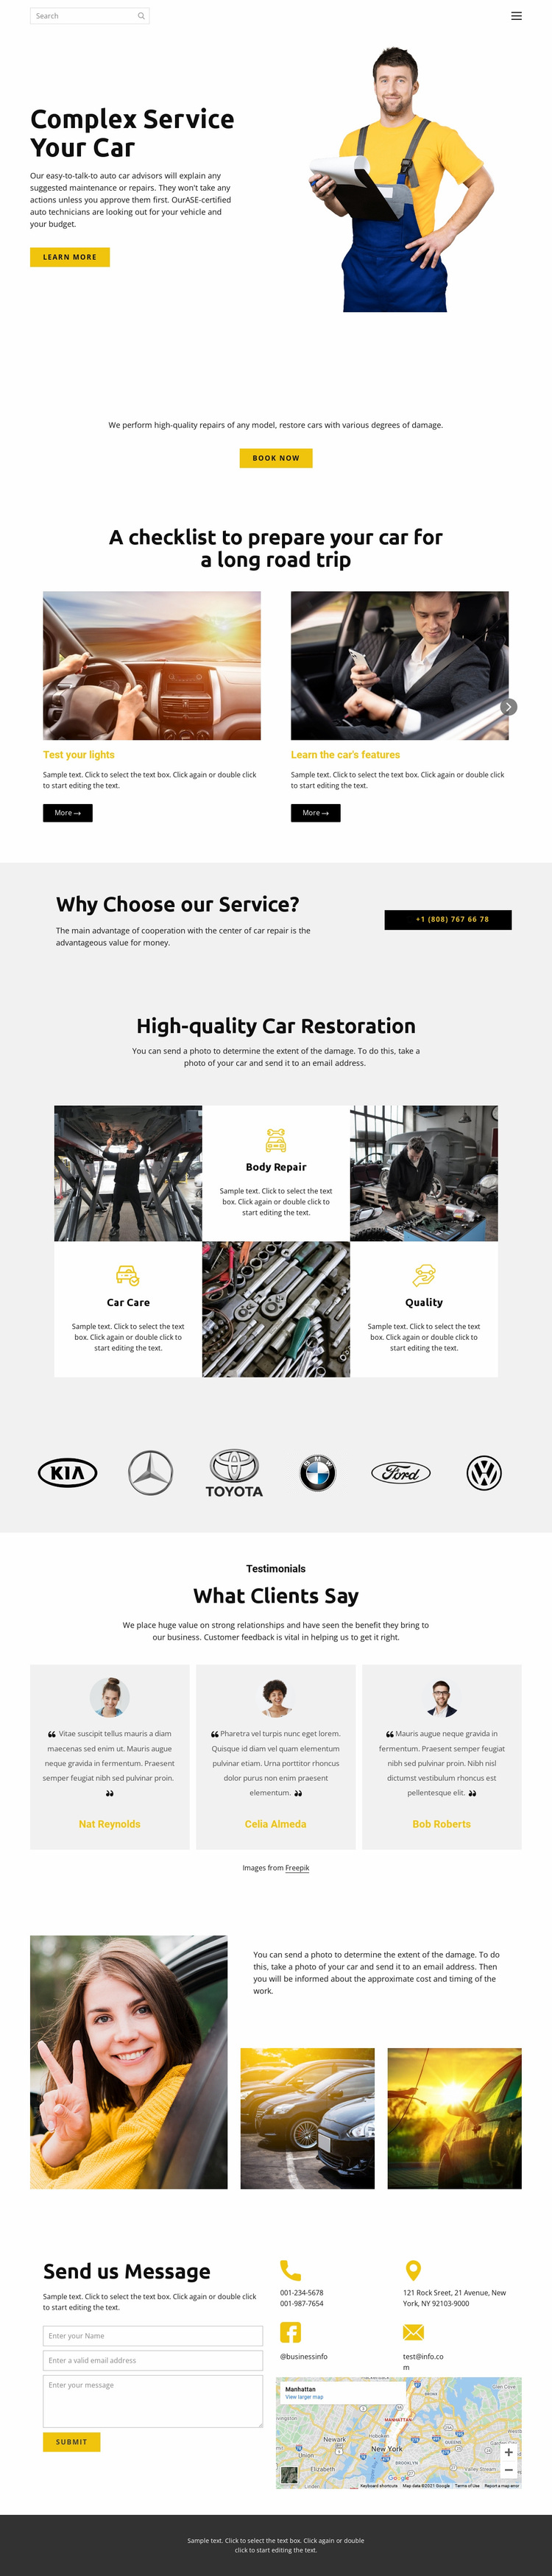 Car service Website Design